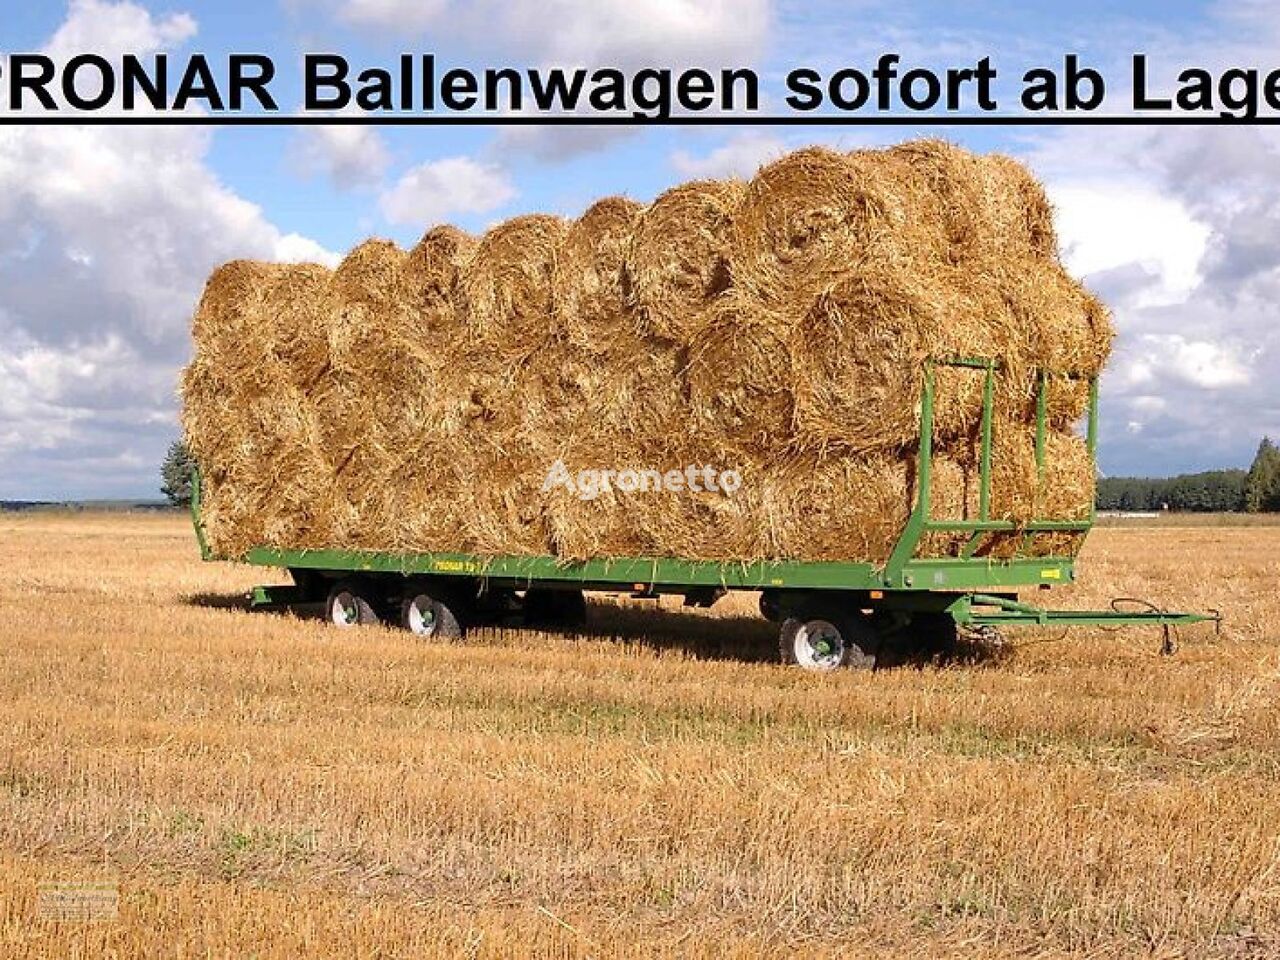 new Pronar Ballenwagen tractor trailer